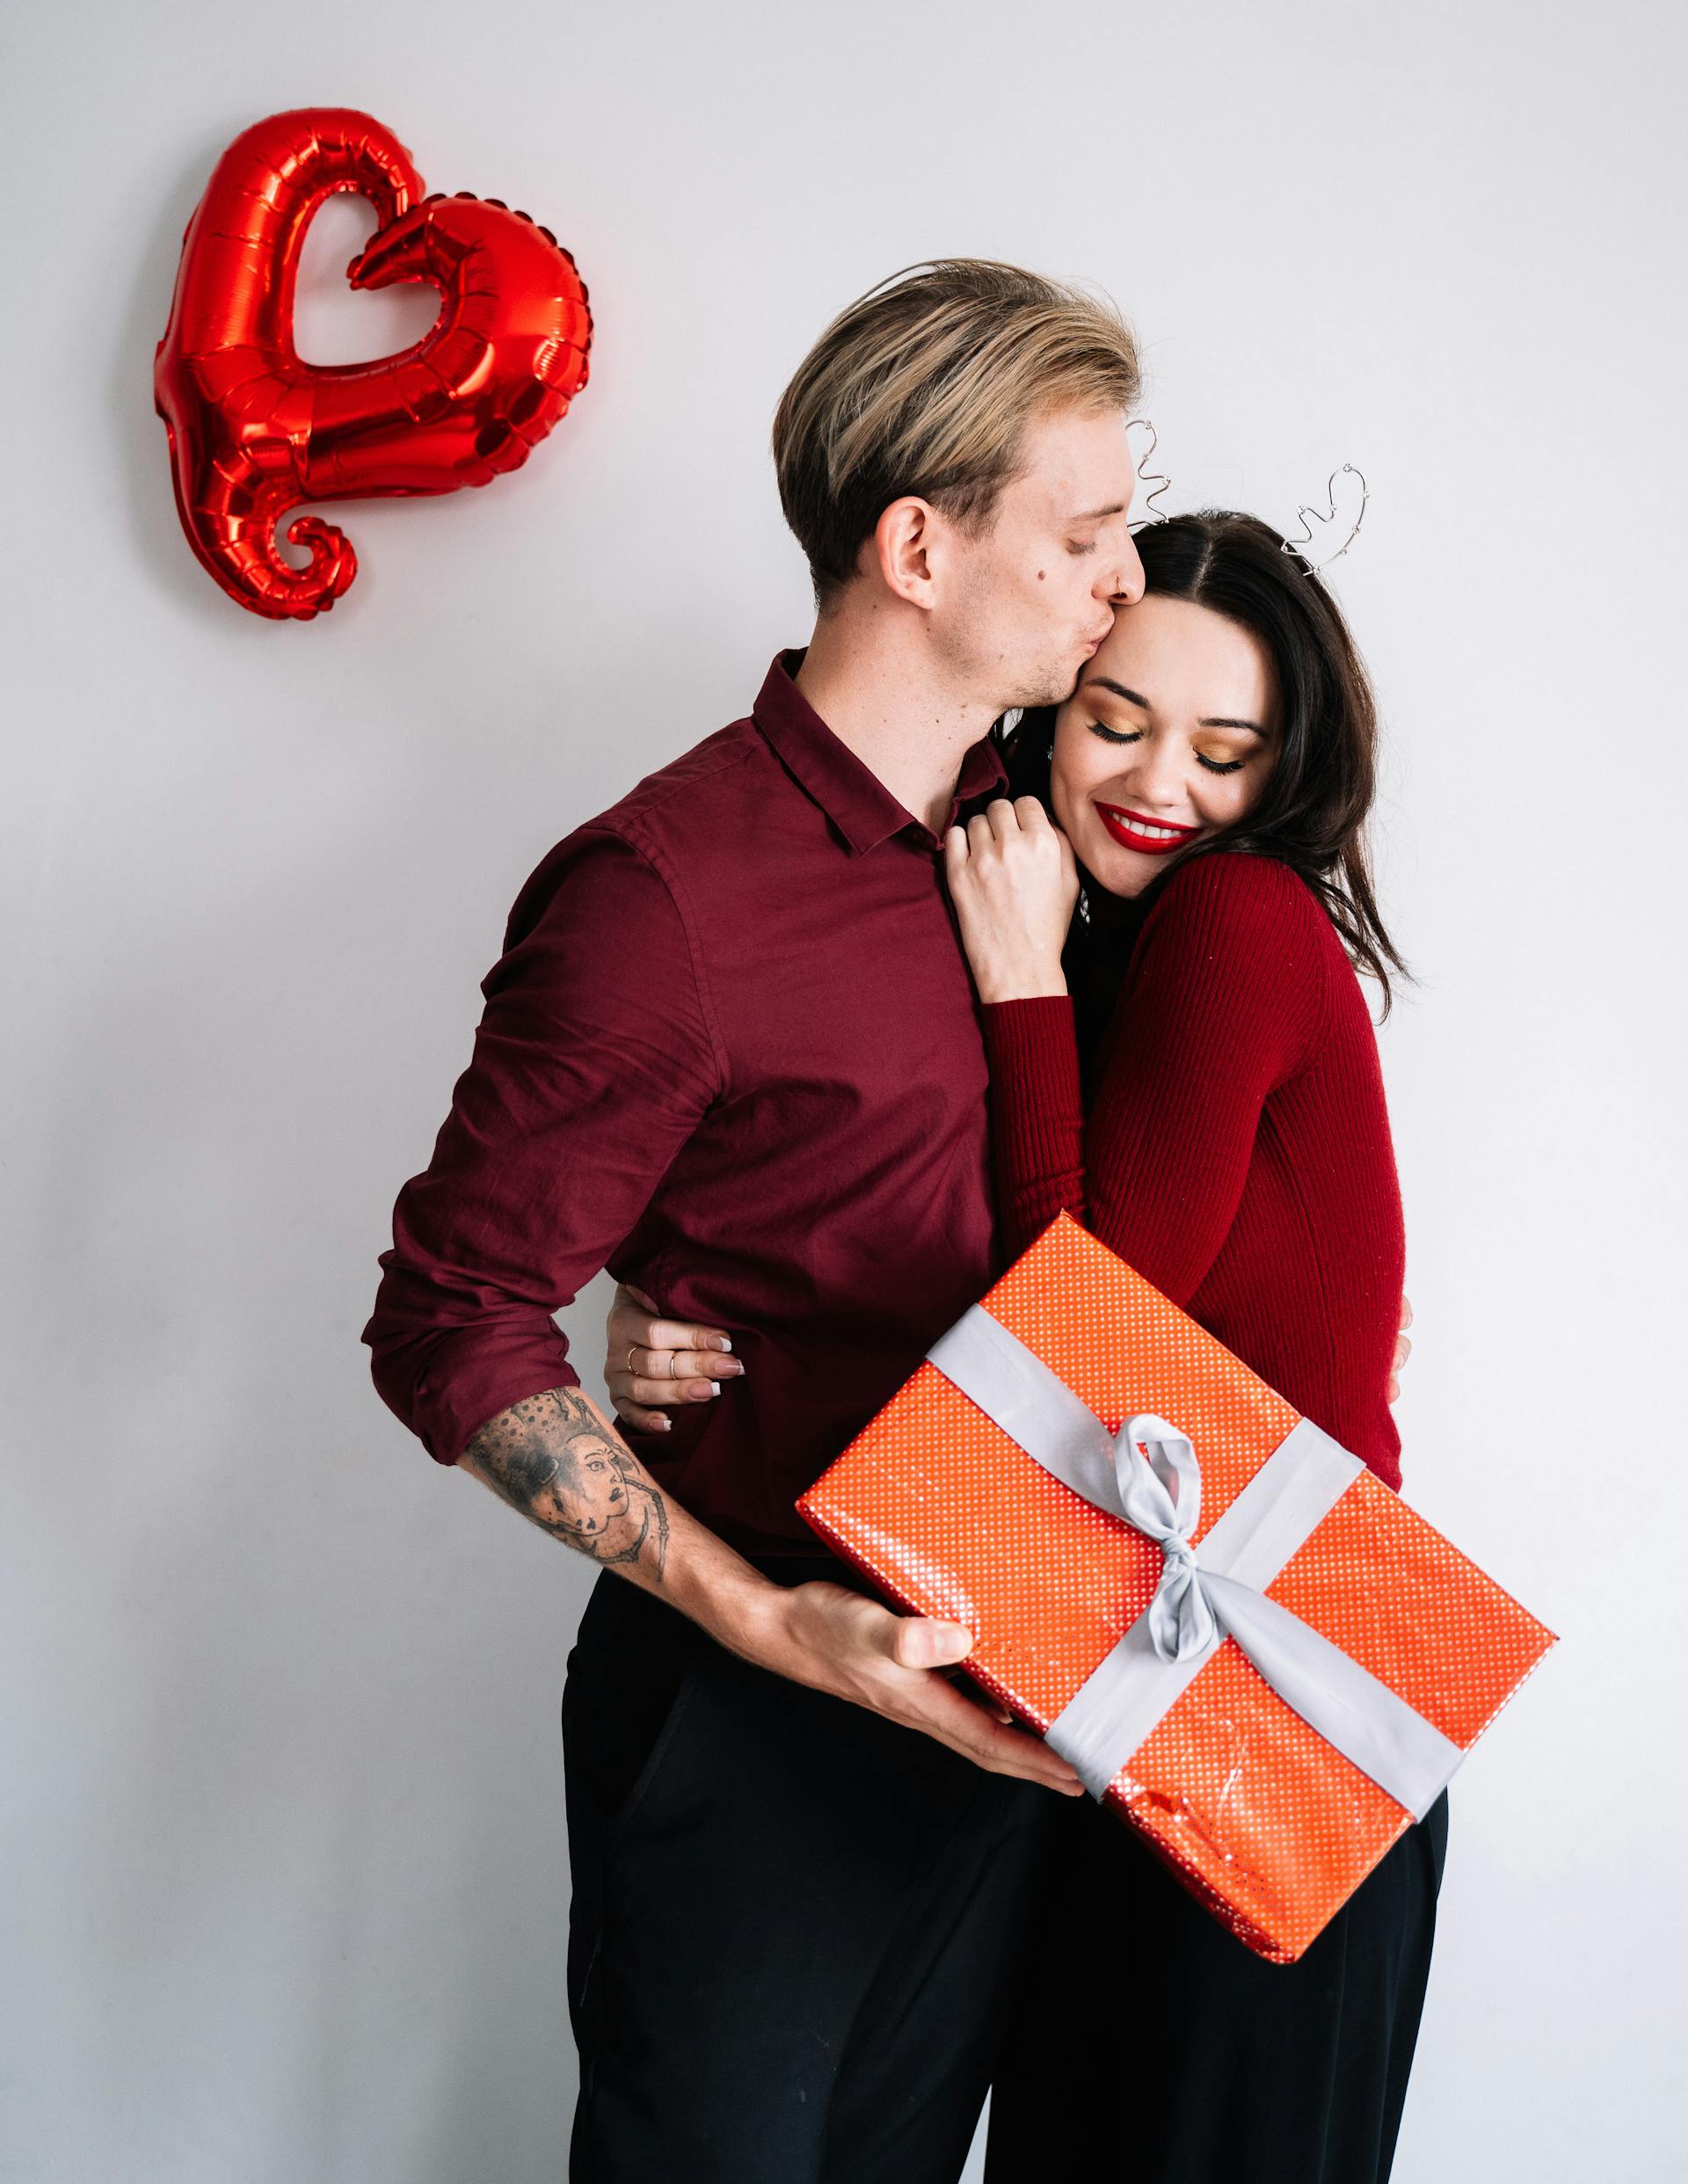 Un hombre besa a una mujer mientras sostiene una caja de regalo | Fuente: Pexels